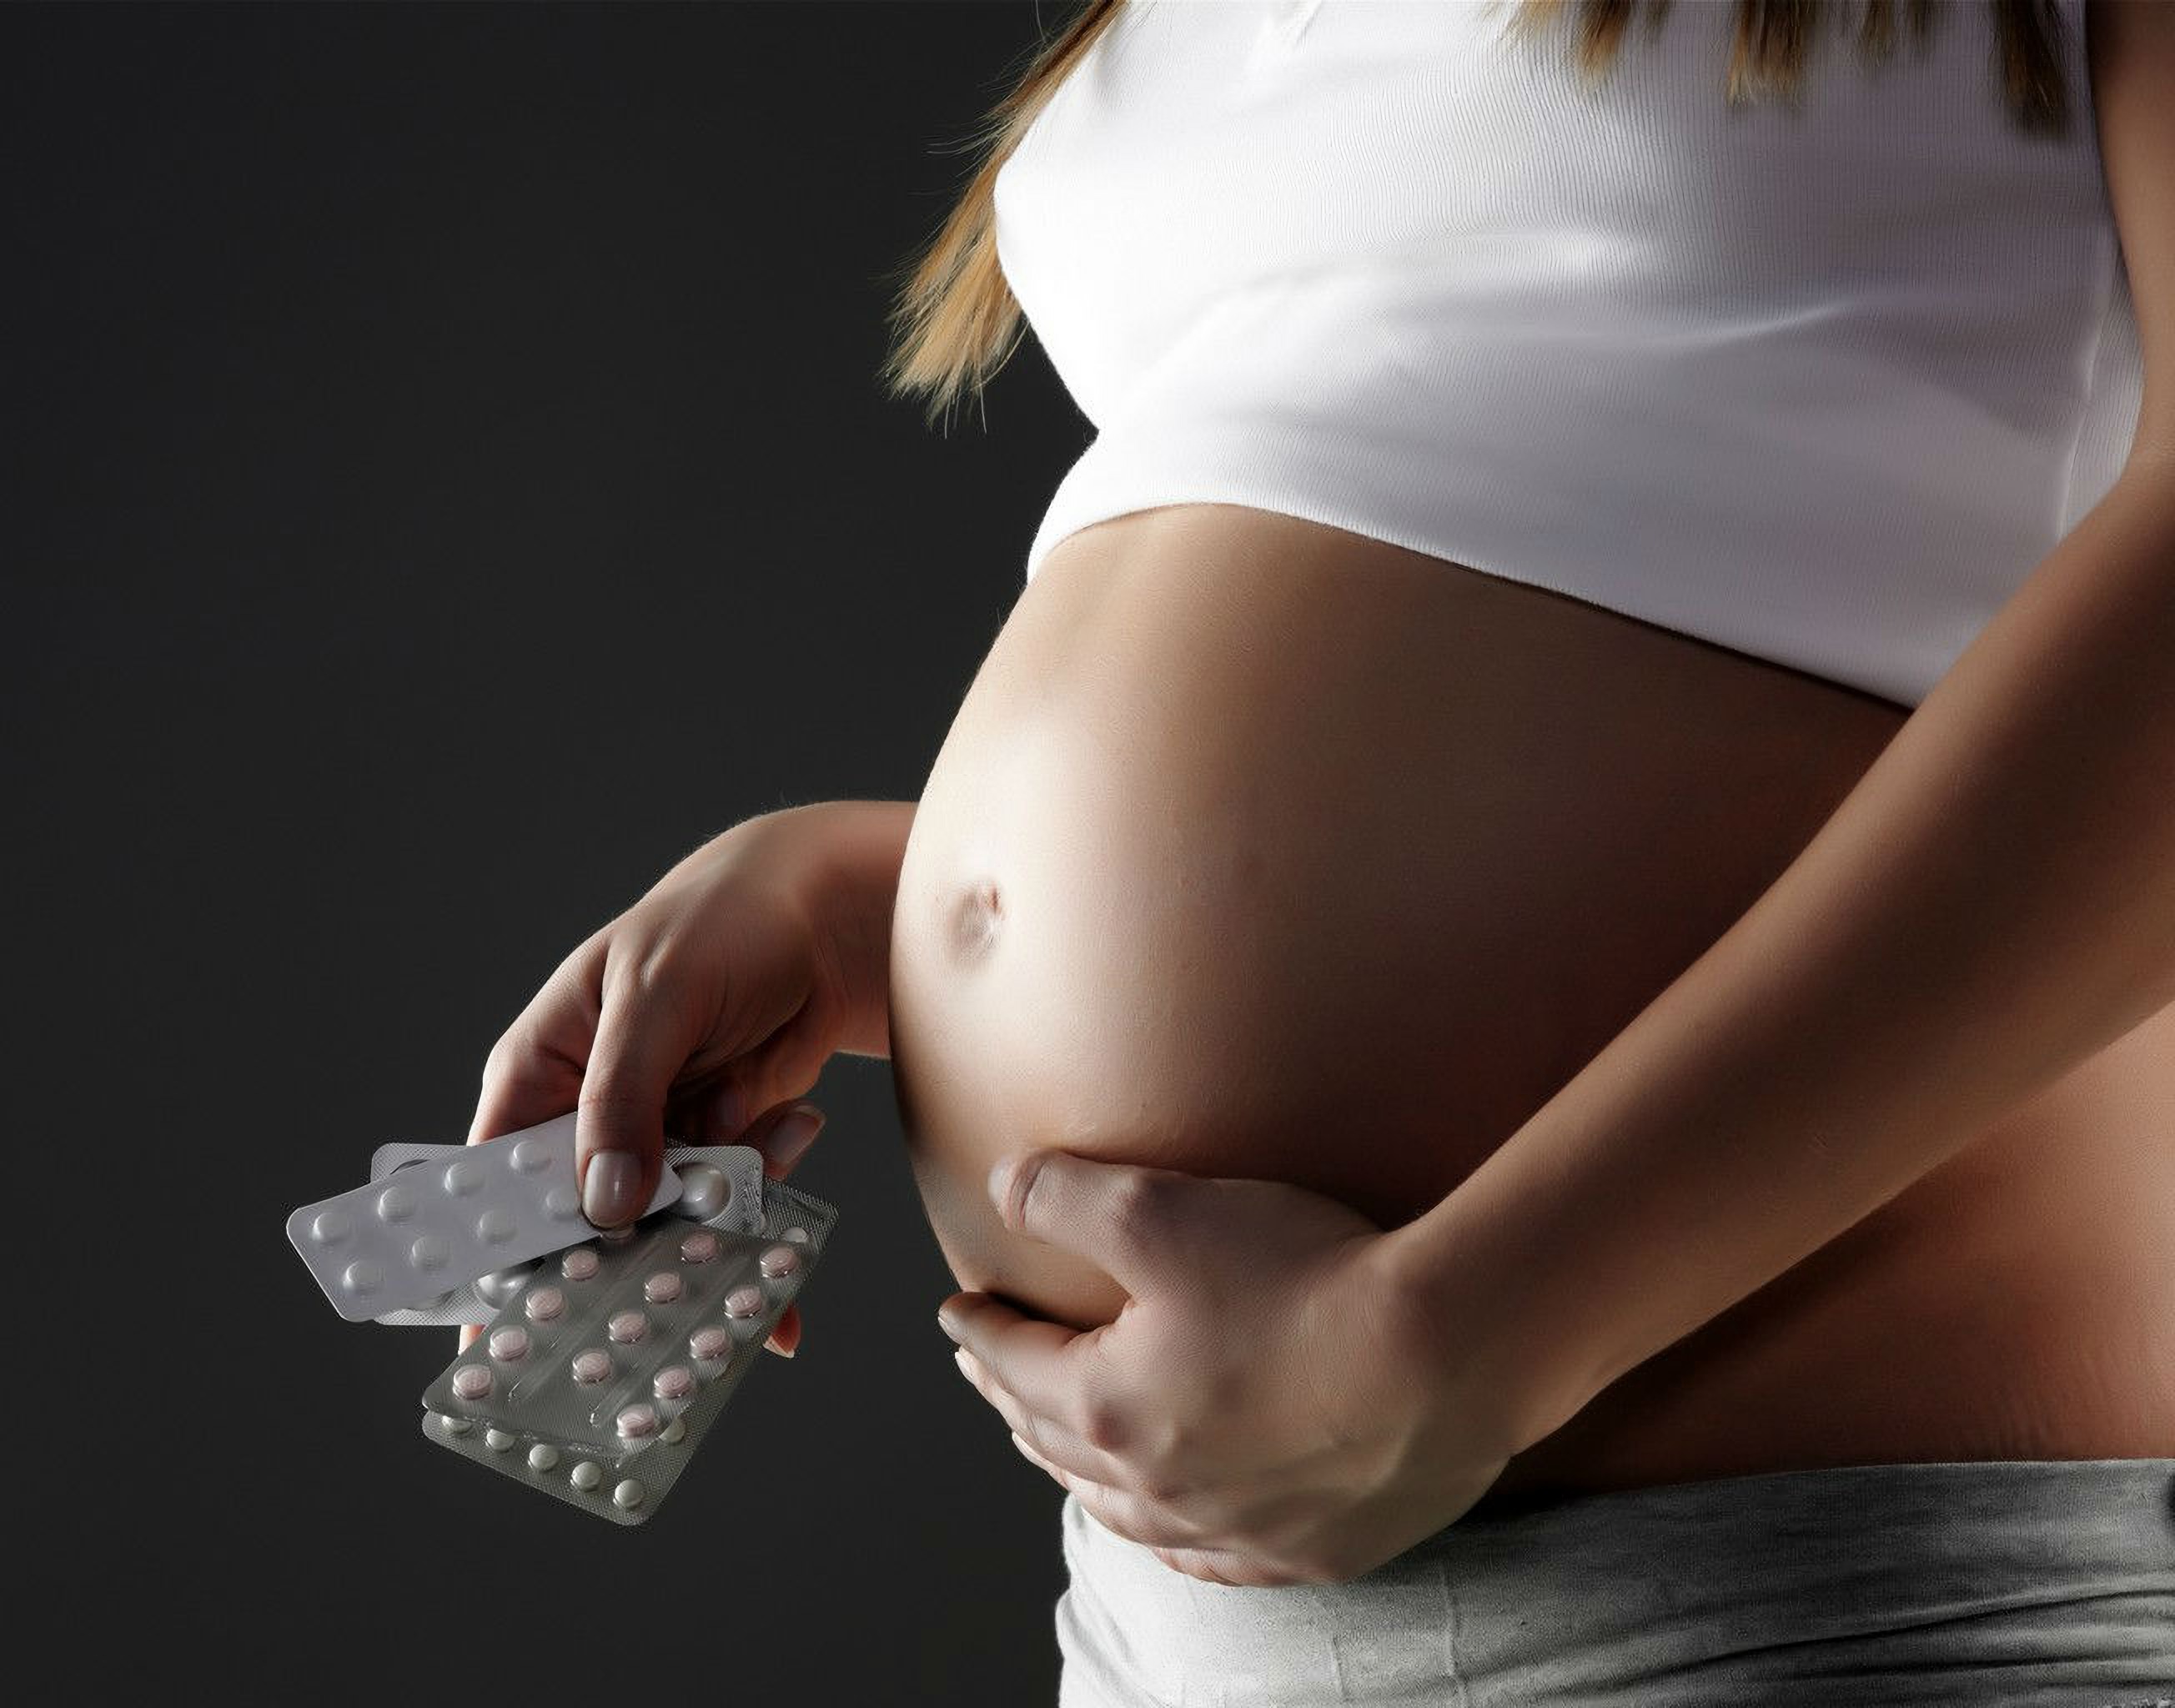 Гепатит во время беременности